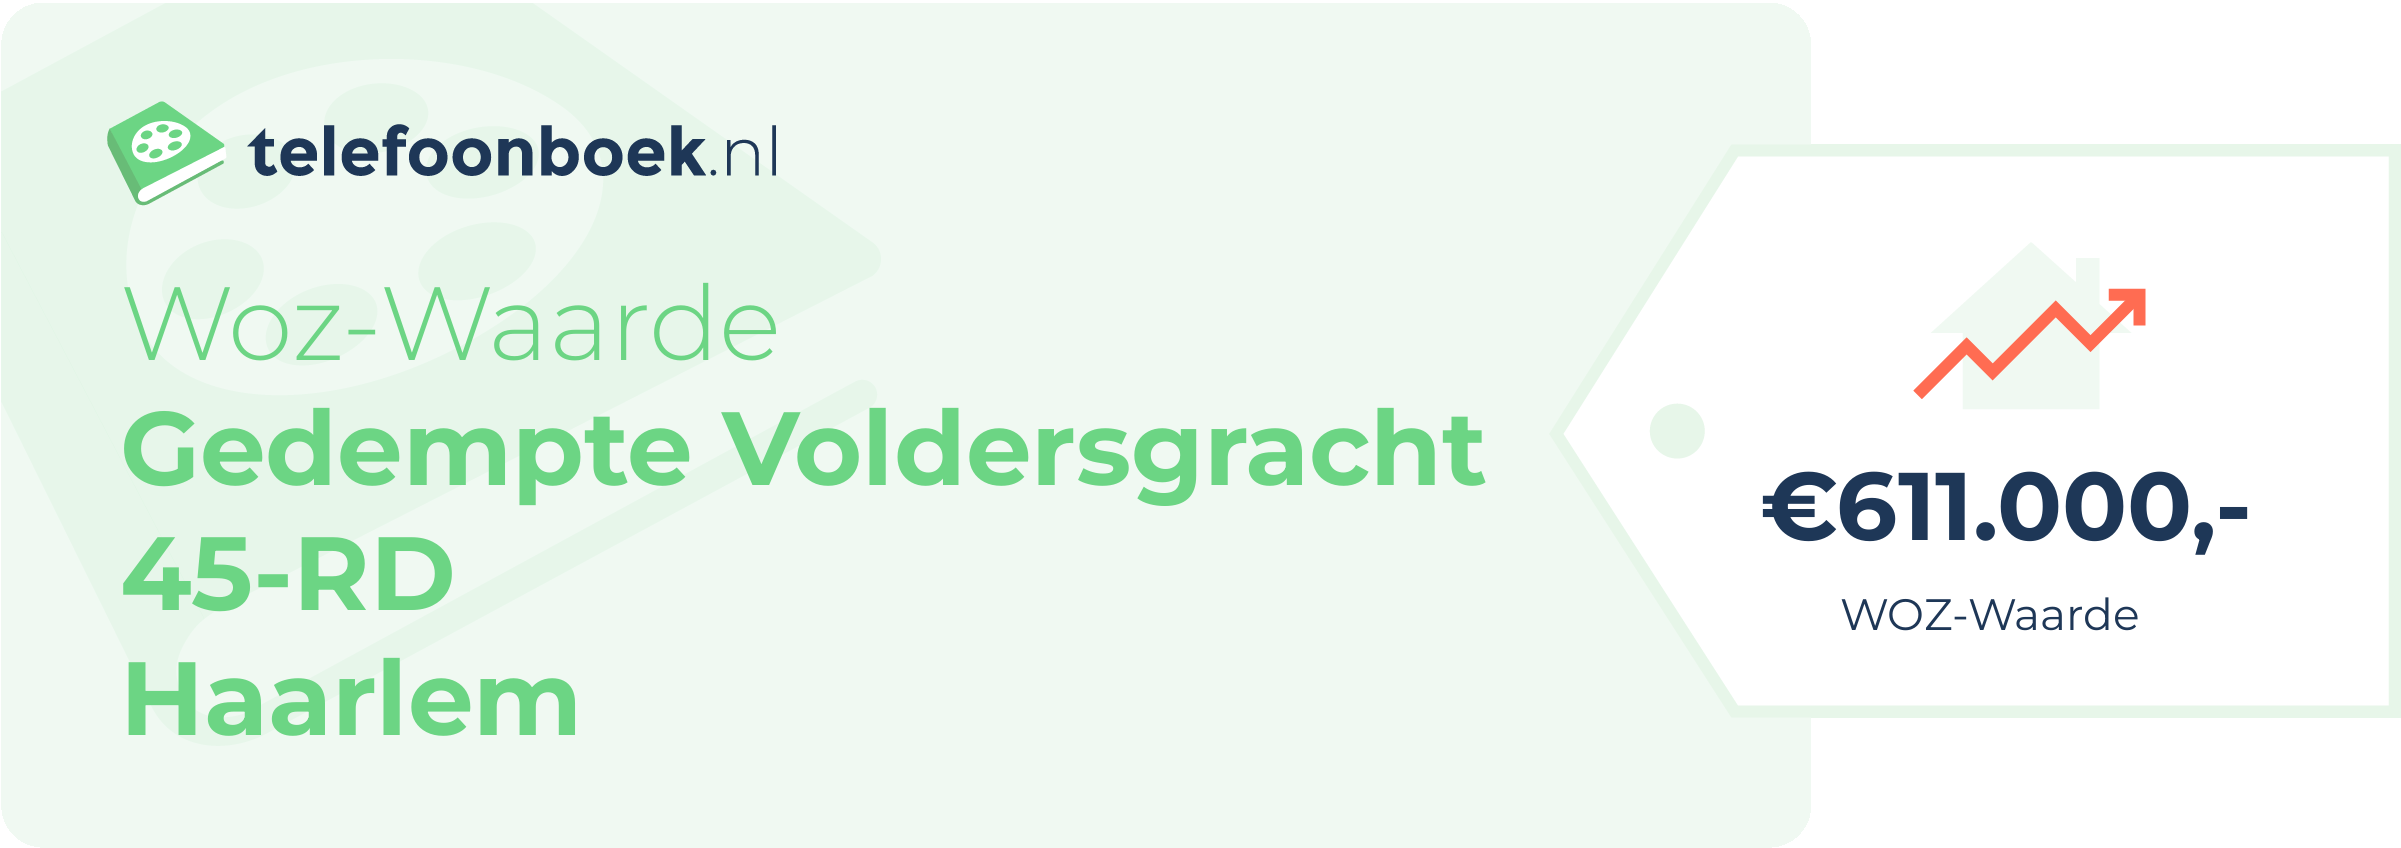 WOZ-waarde Gedempte Voldersgracht 45-RD Haarlem